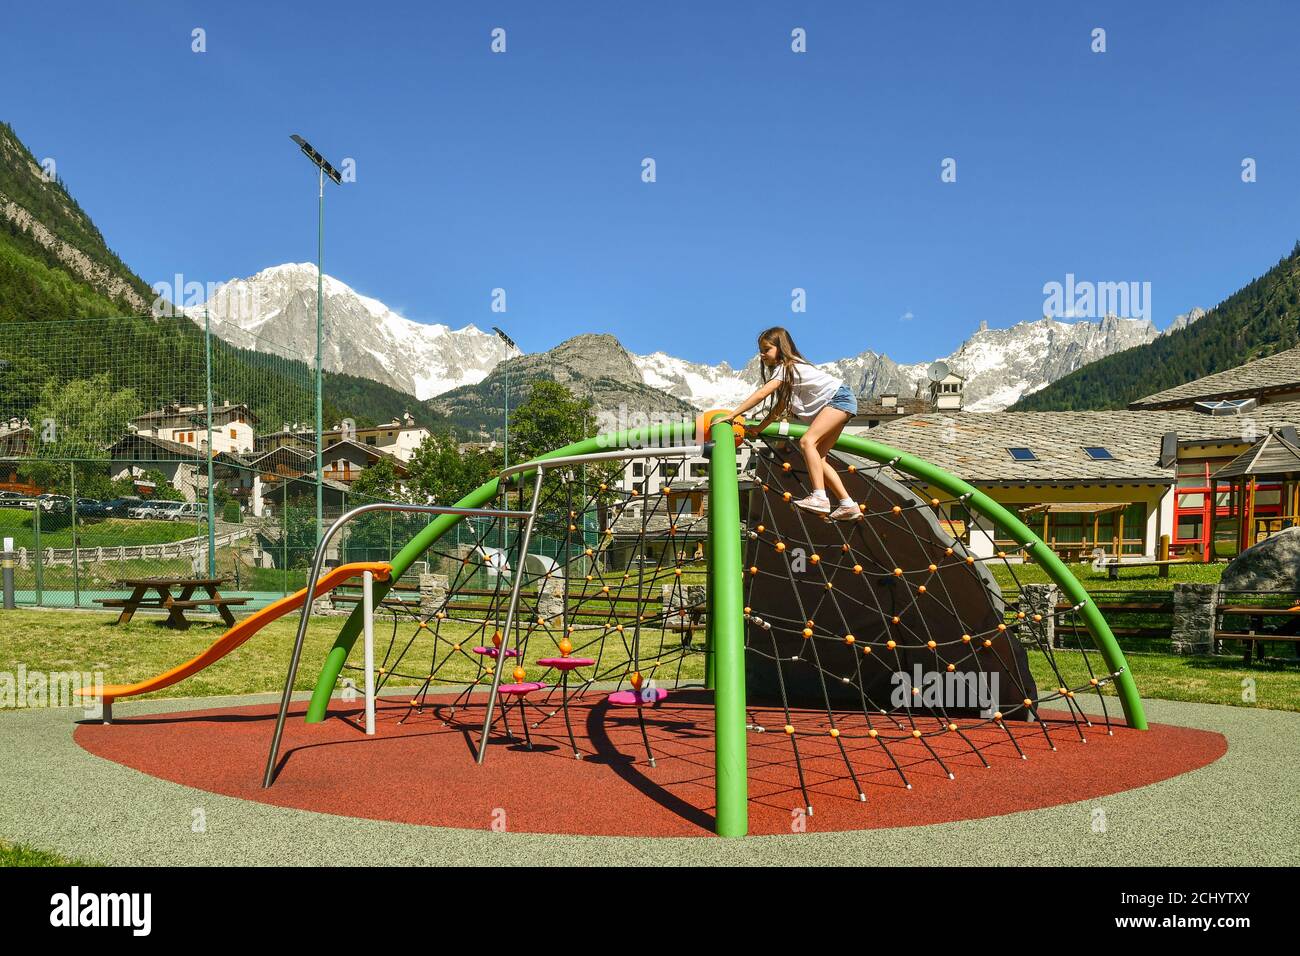 Petite fille (10 ans) grimpant une structure de jeu dans une aire de jeux du village alpin au pied du massif du Mont blanc, pré-Saint-Didier, Aoste, Italie Banque D'Images